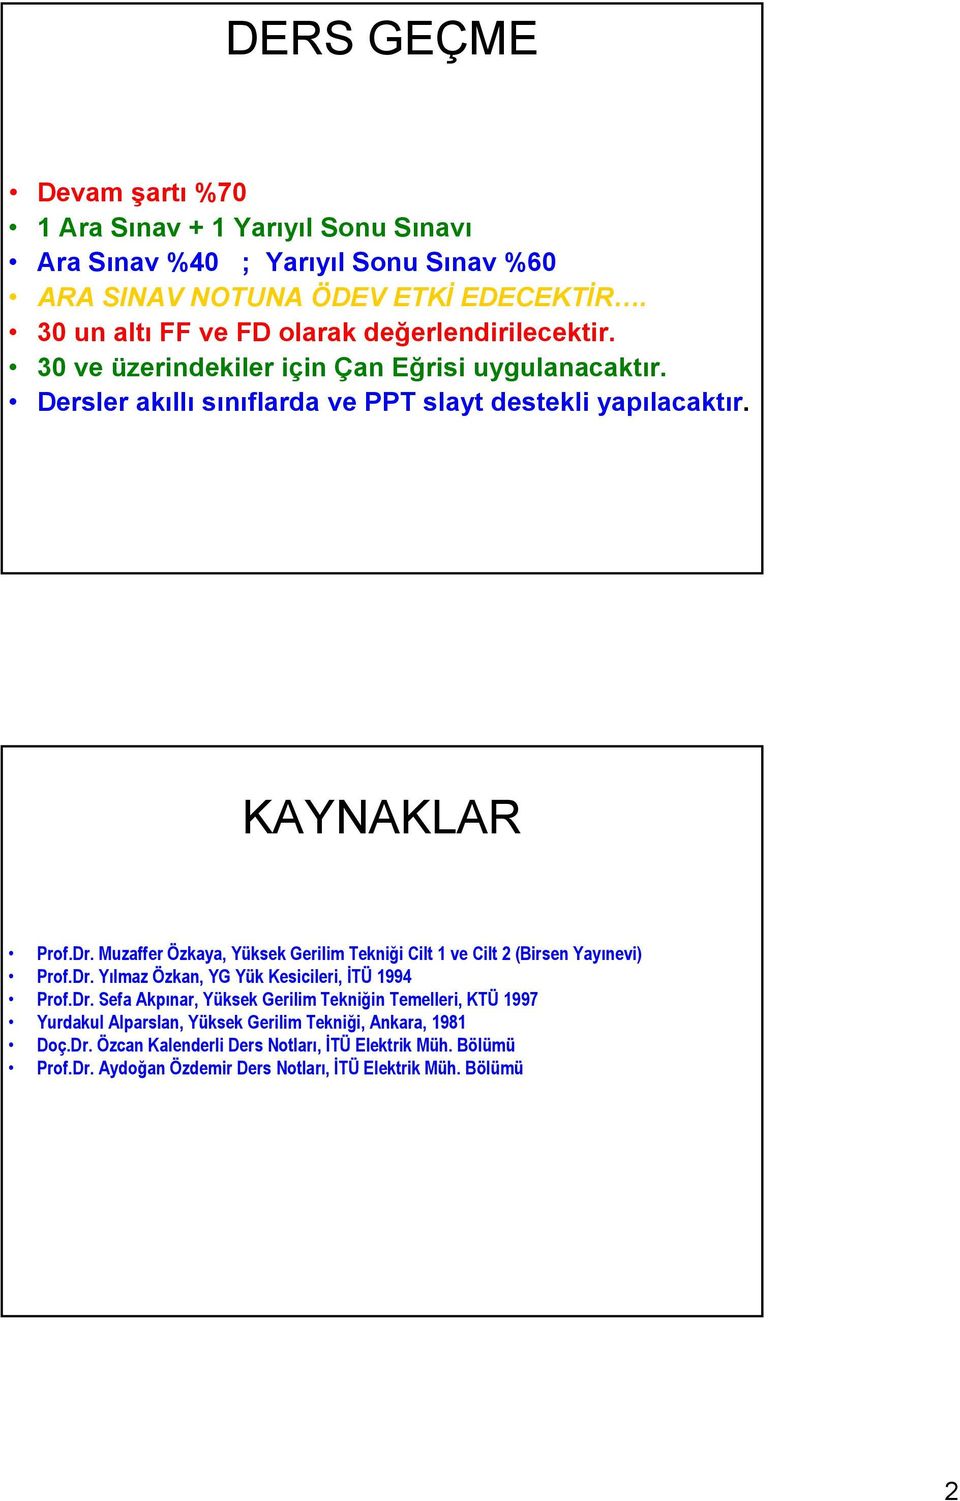 KAYNAKLAR Prof.Dr. Muzaffer Özkaya, Yüksek Gerilim Tekniği Cilt 1 ve Cilt 2 (Birsen Yayınevi) Prof.Dr. Yılmaz Özkan, YG Yük Kesicileri, İTÜ 1994 Prof.Dr. Sefa Akpınar, Yüksek Gerilim Tekniğin Temelleri, KTÜ 1997 Yurdakul Alparslan, Yüksek Gerilim Tekniği, Ankara, 1981 Doç.